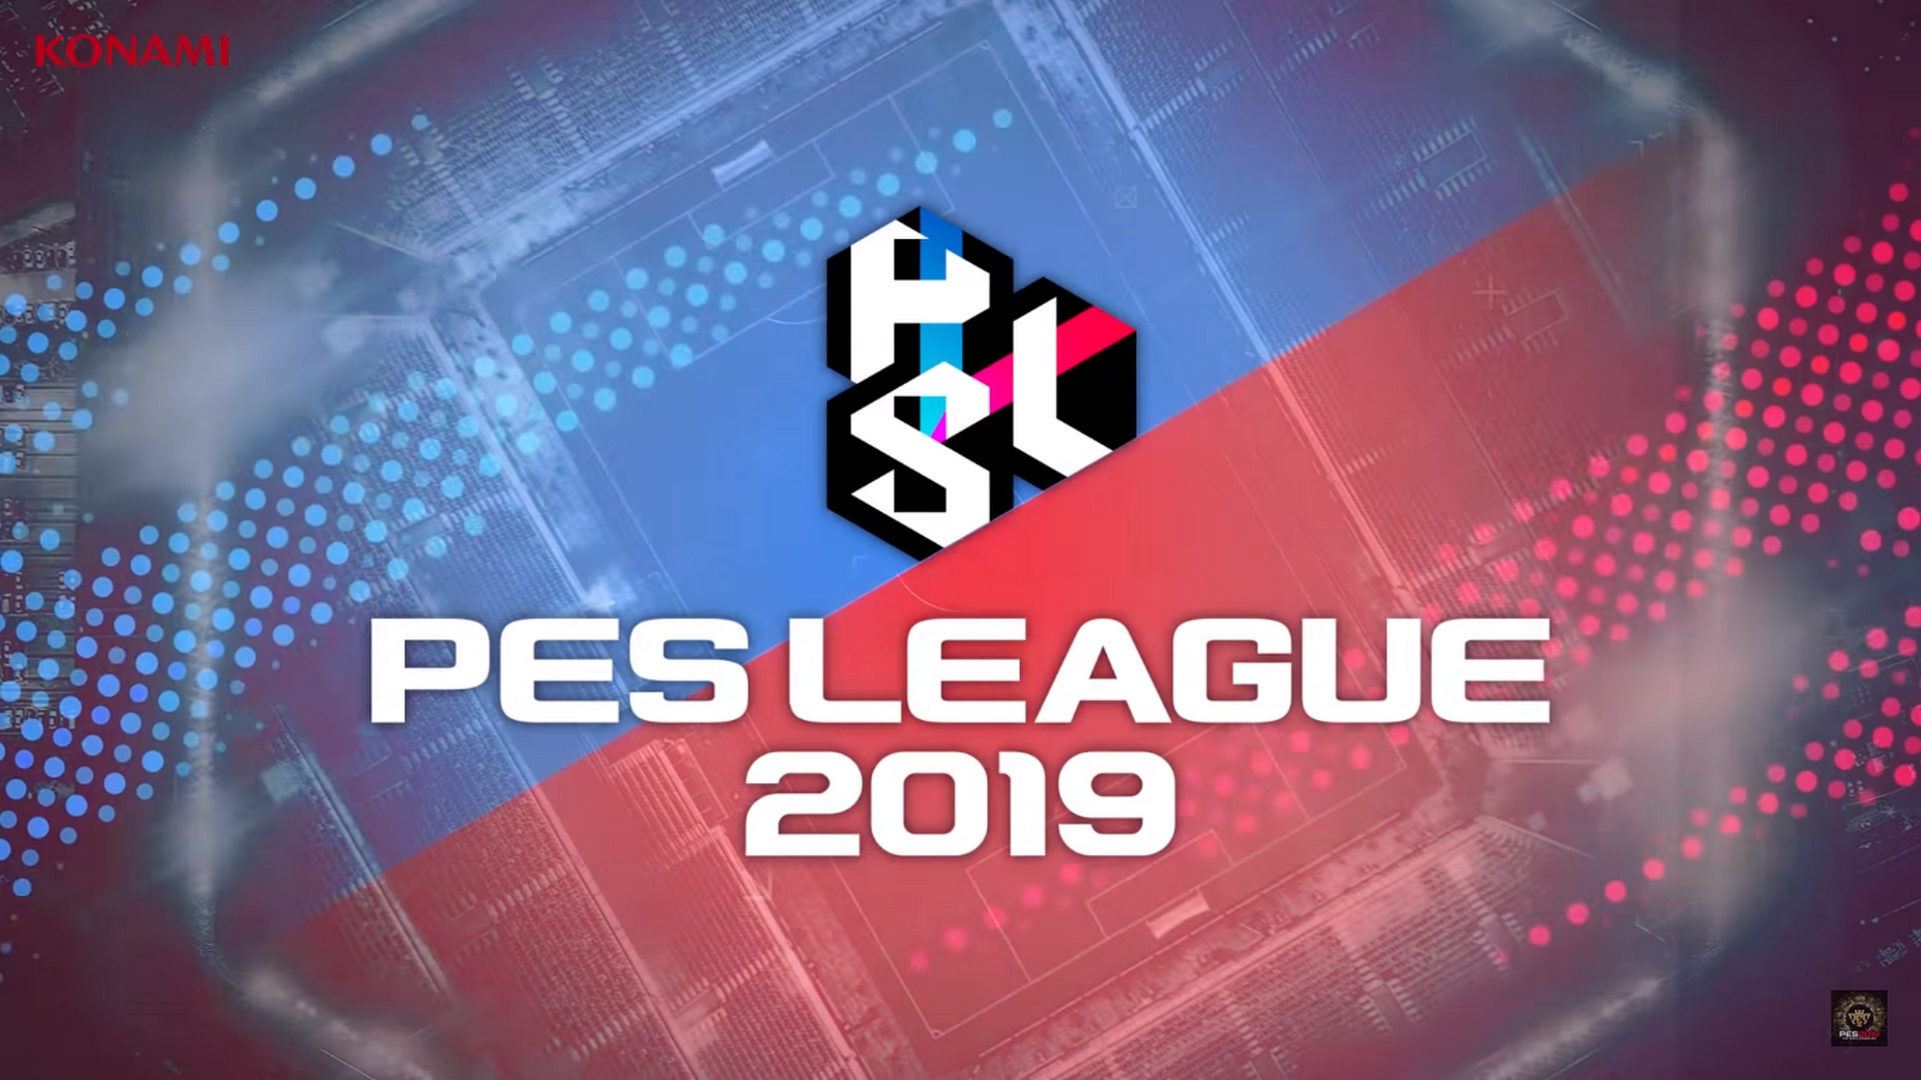 Pes league 2019